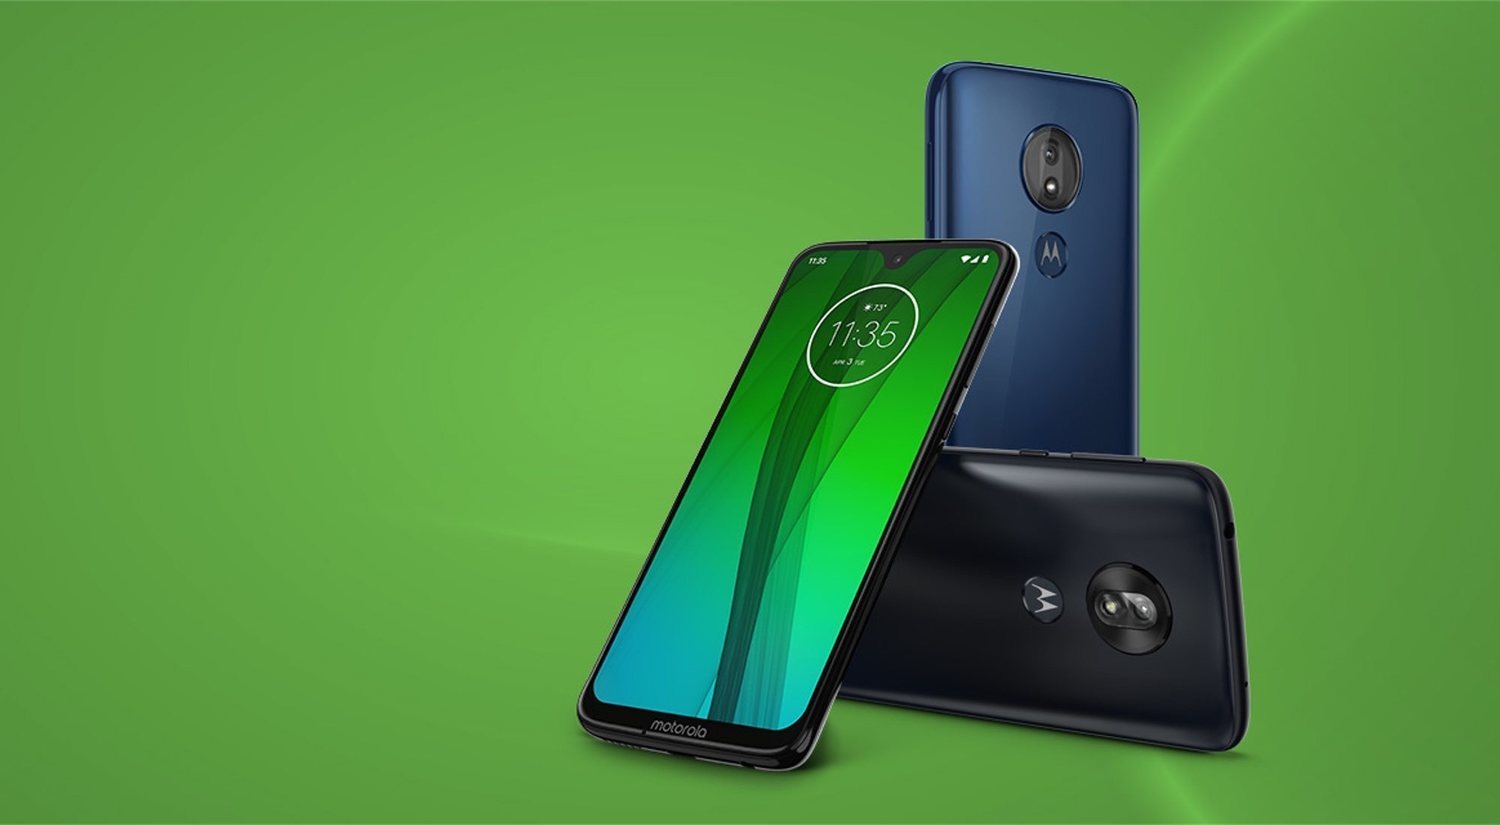 Motorola lanza Moto G7 series, su nueva familia de smartphones